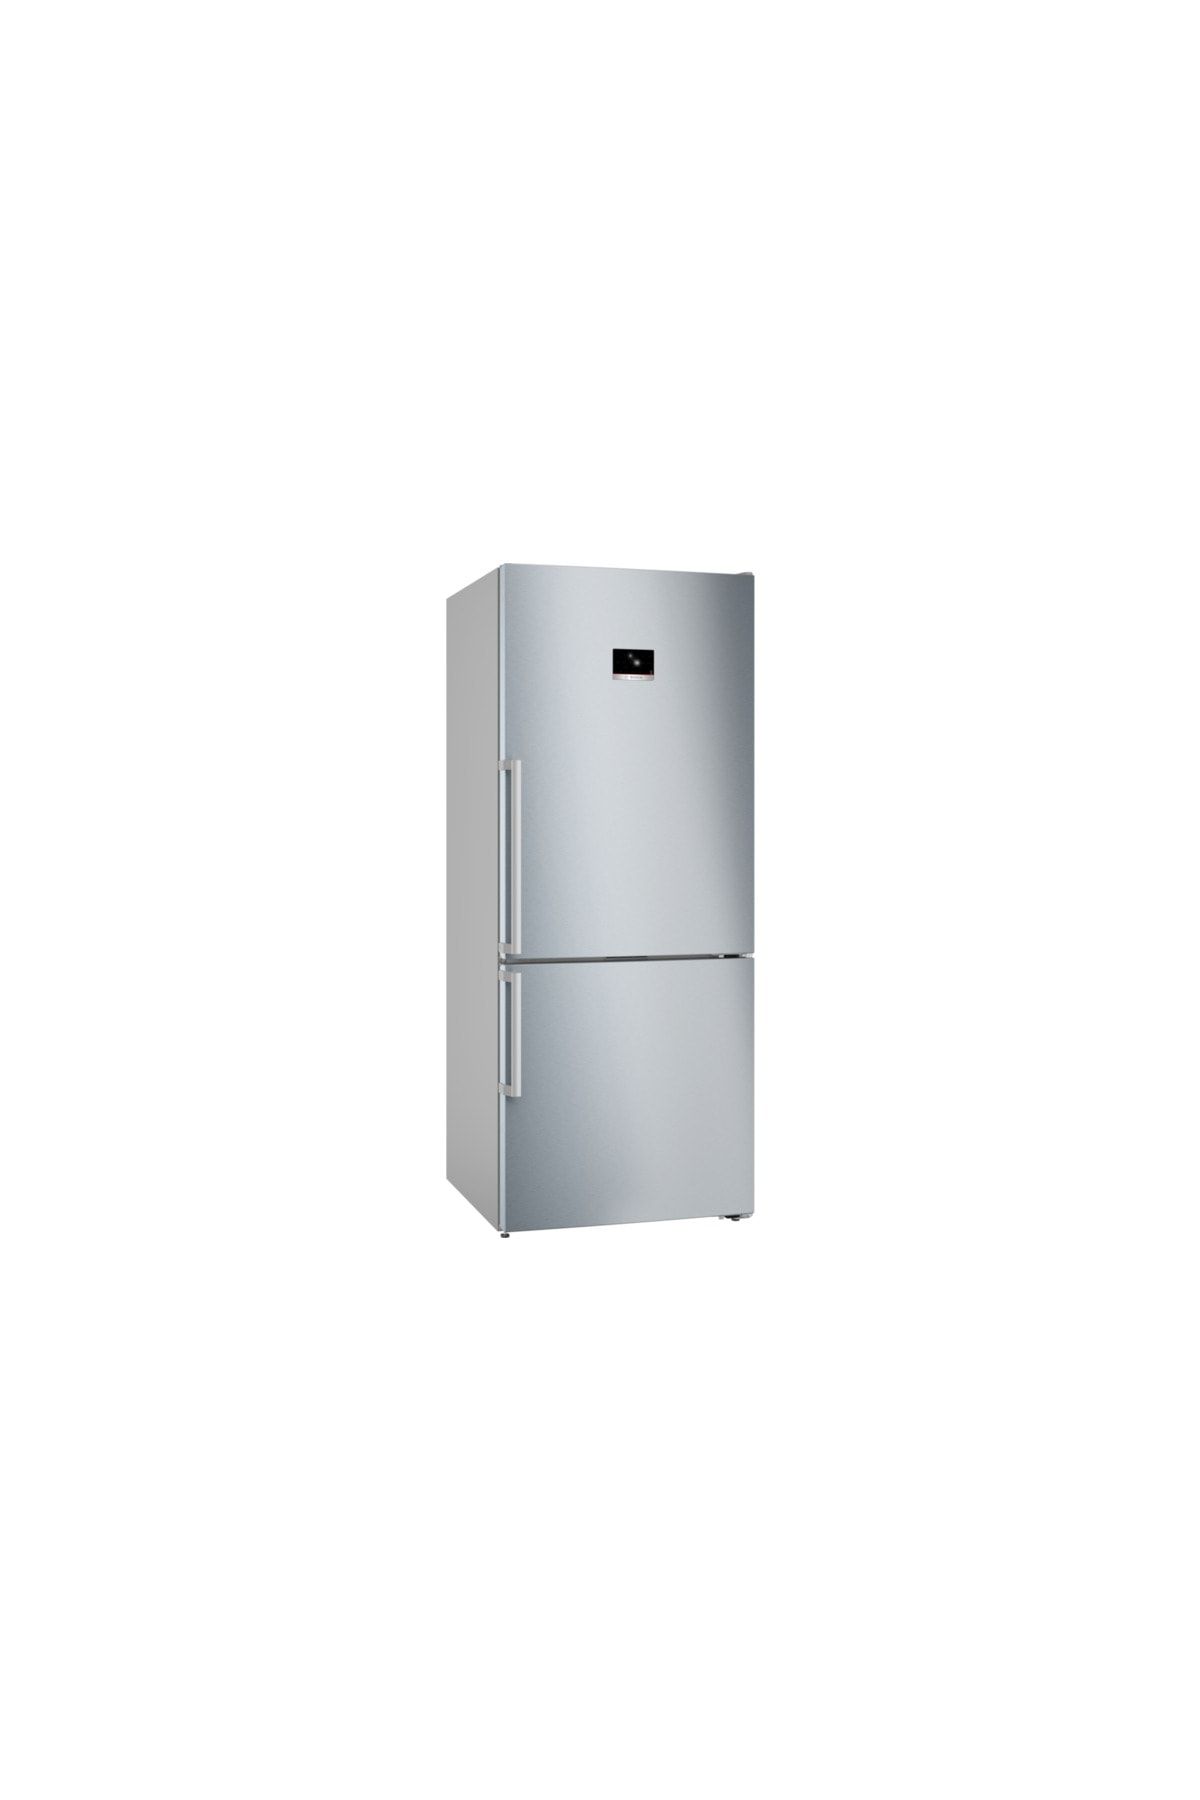 Bosch Serie 8 Alttan Donduruculu Buzdolabı 186 X 75 cm Kolay Temizlenebilir Inox